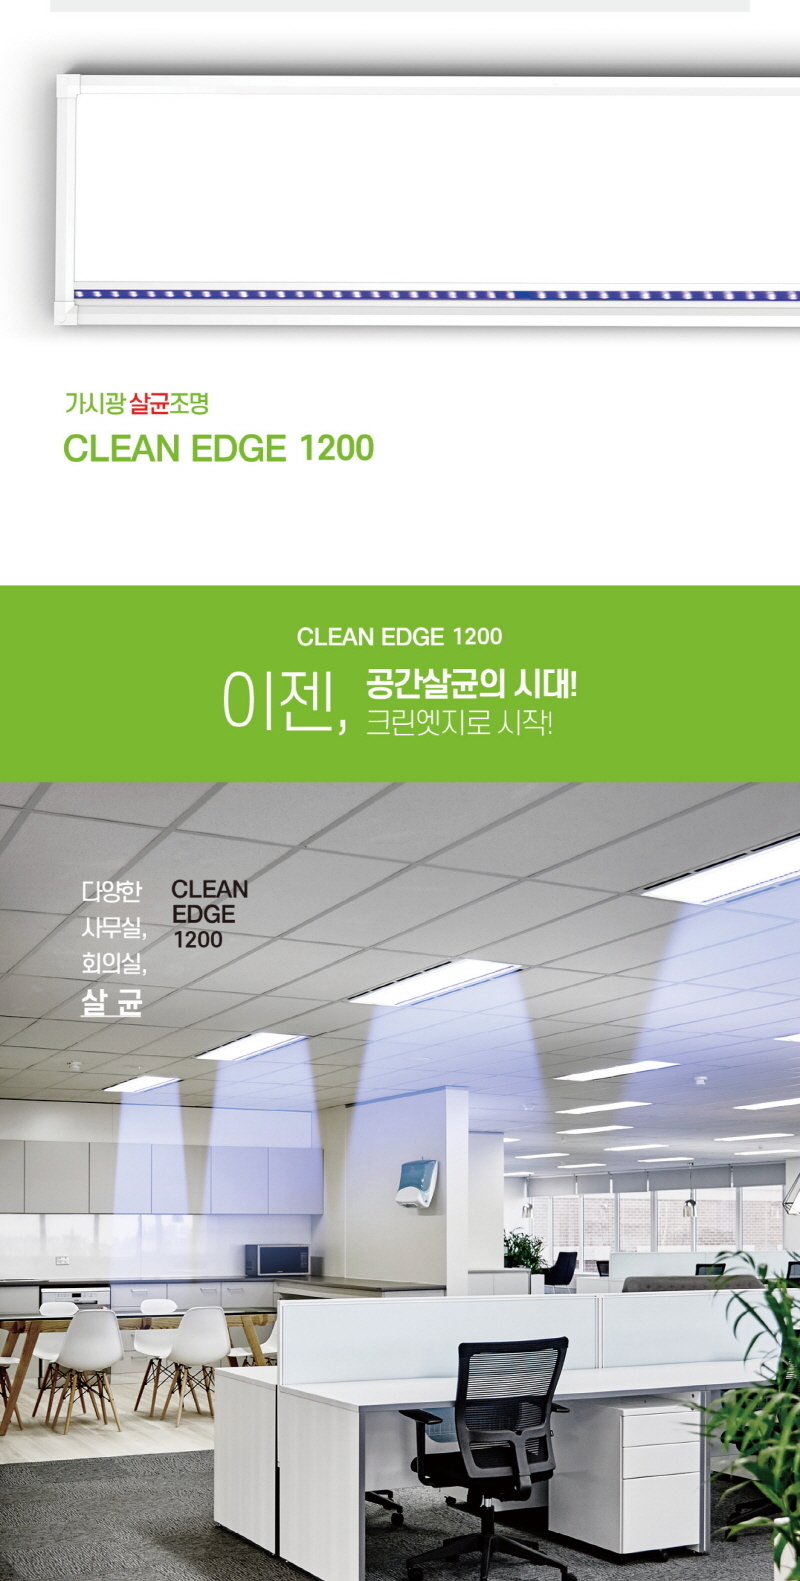 CLEAN-EDGE-3.jpg